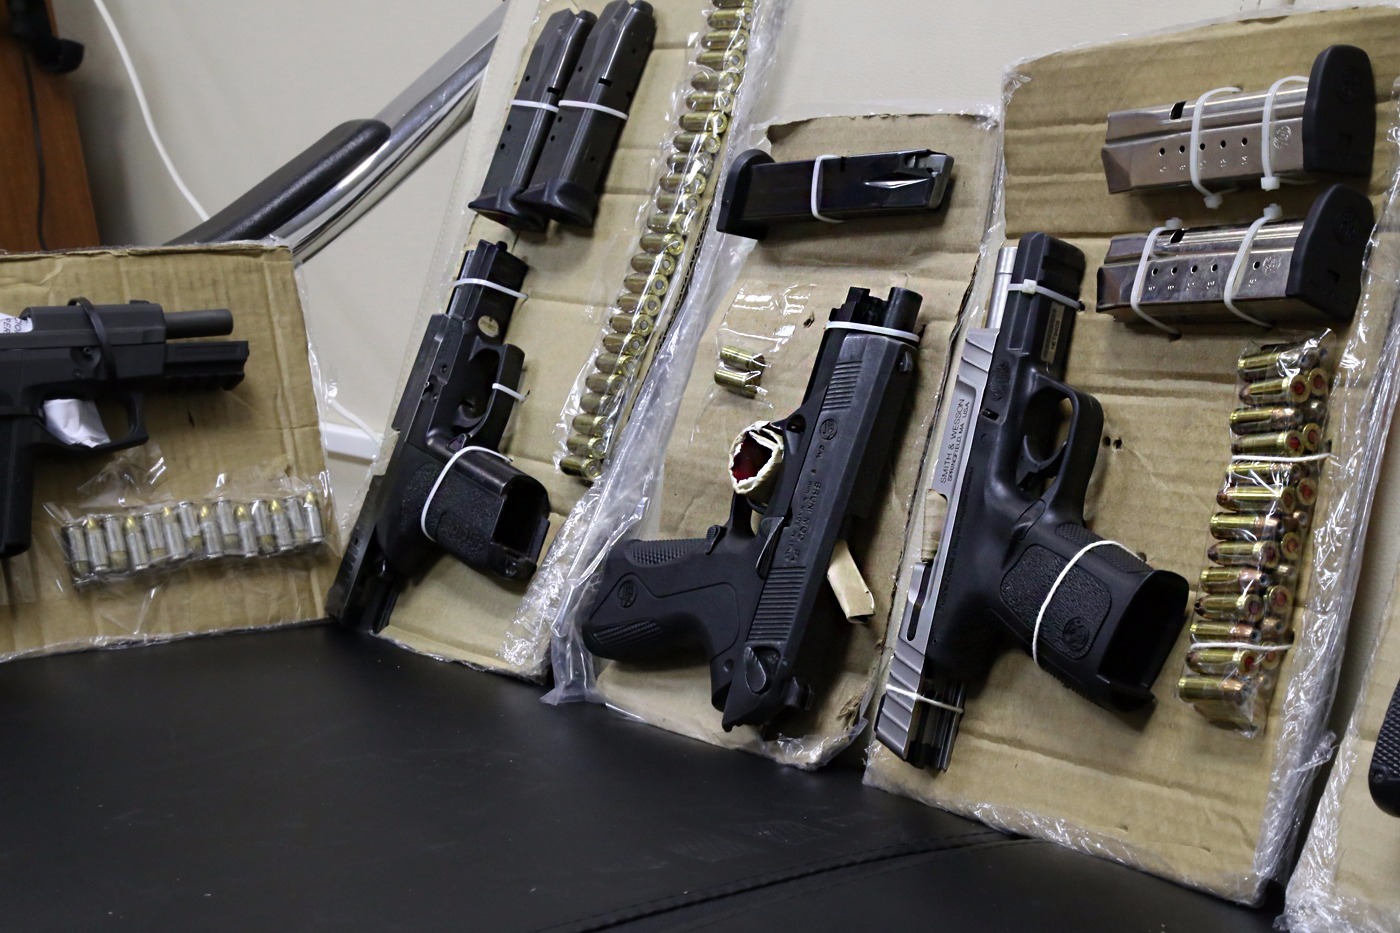 Seguridad afirma que más de la mitad de armas ligadas a delitos fueron inscritas legalmente